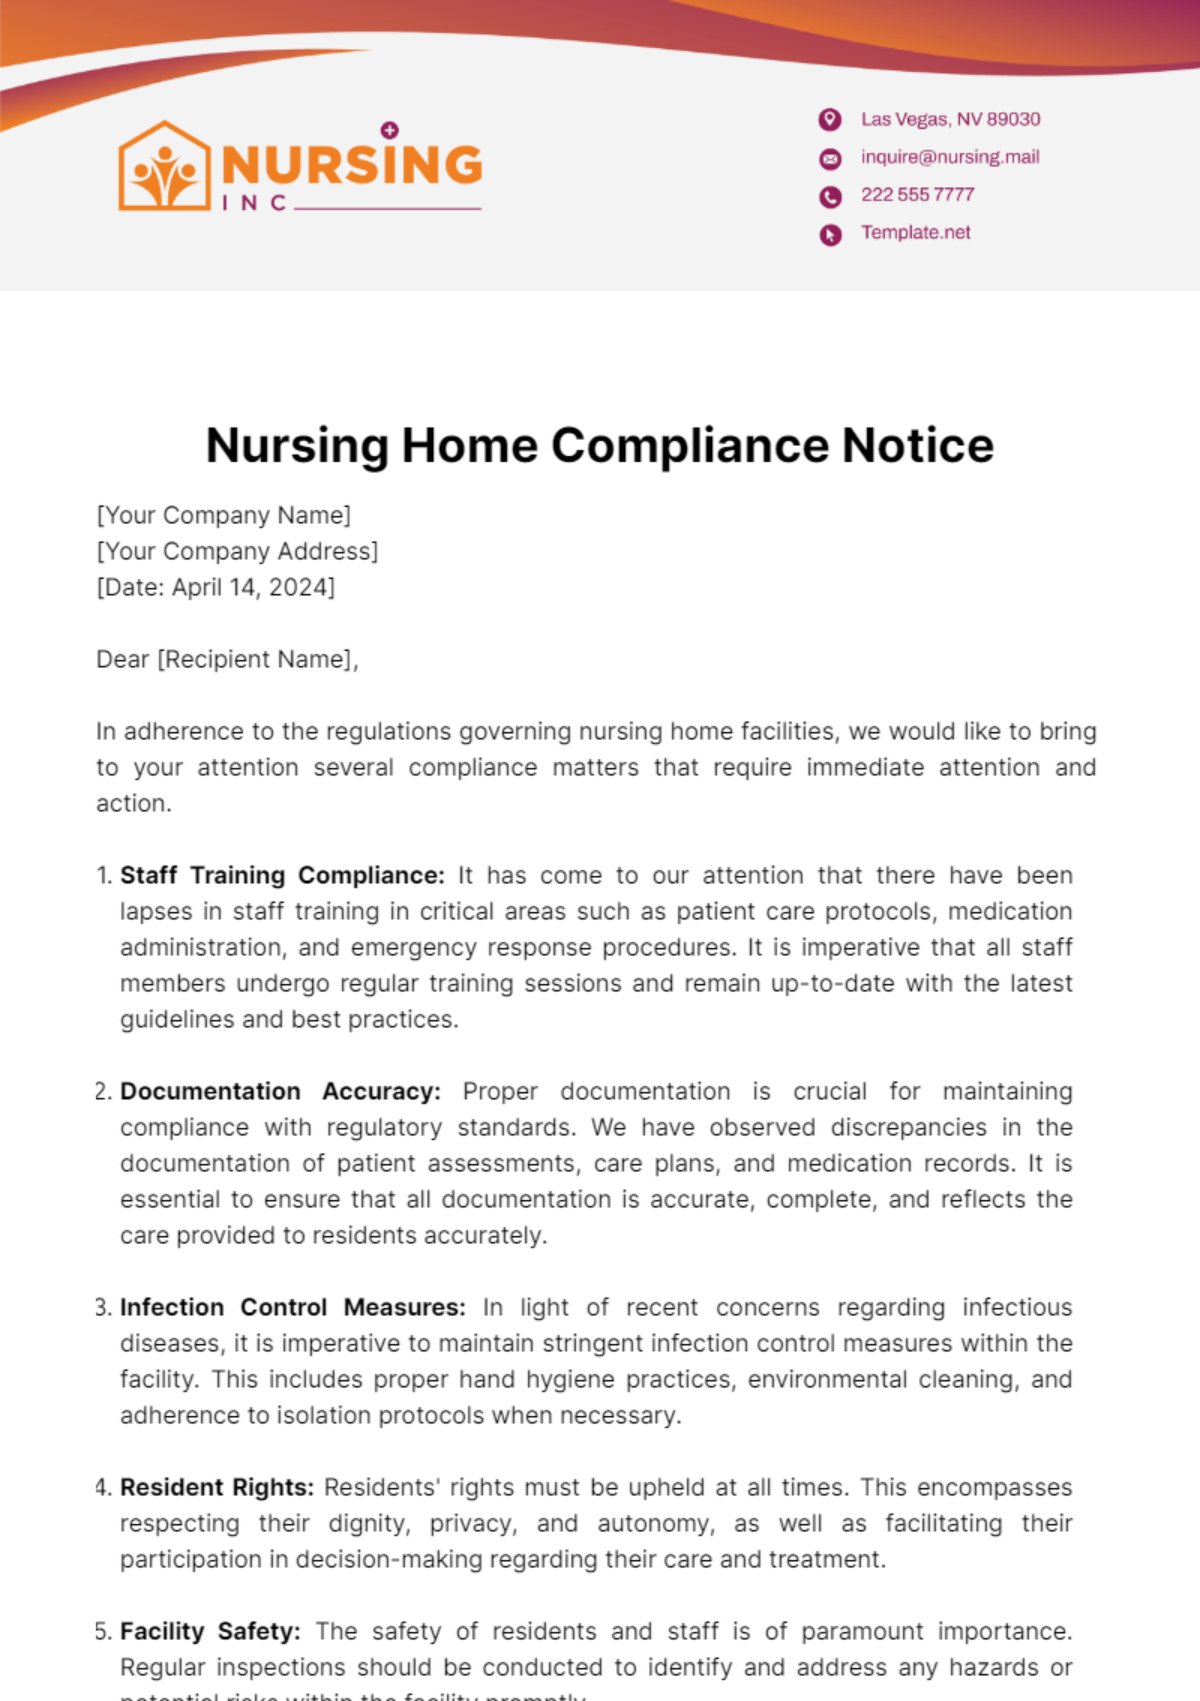 Nursing Home Compliance Notice Template